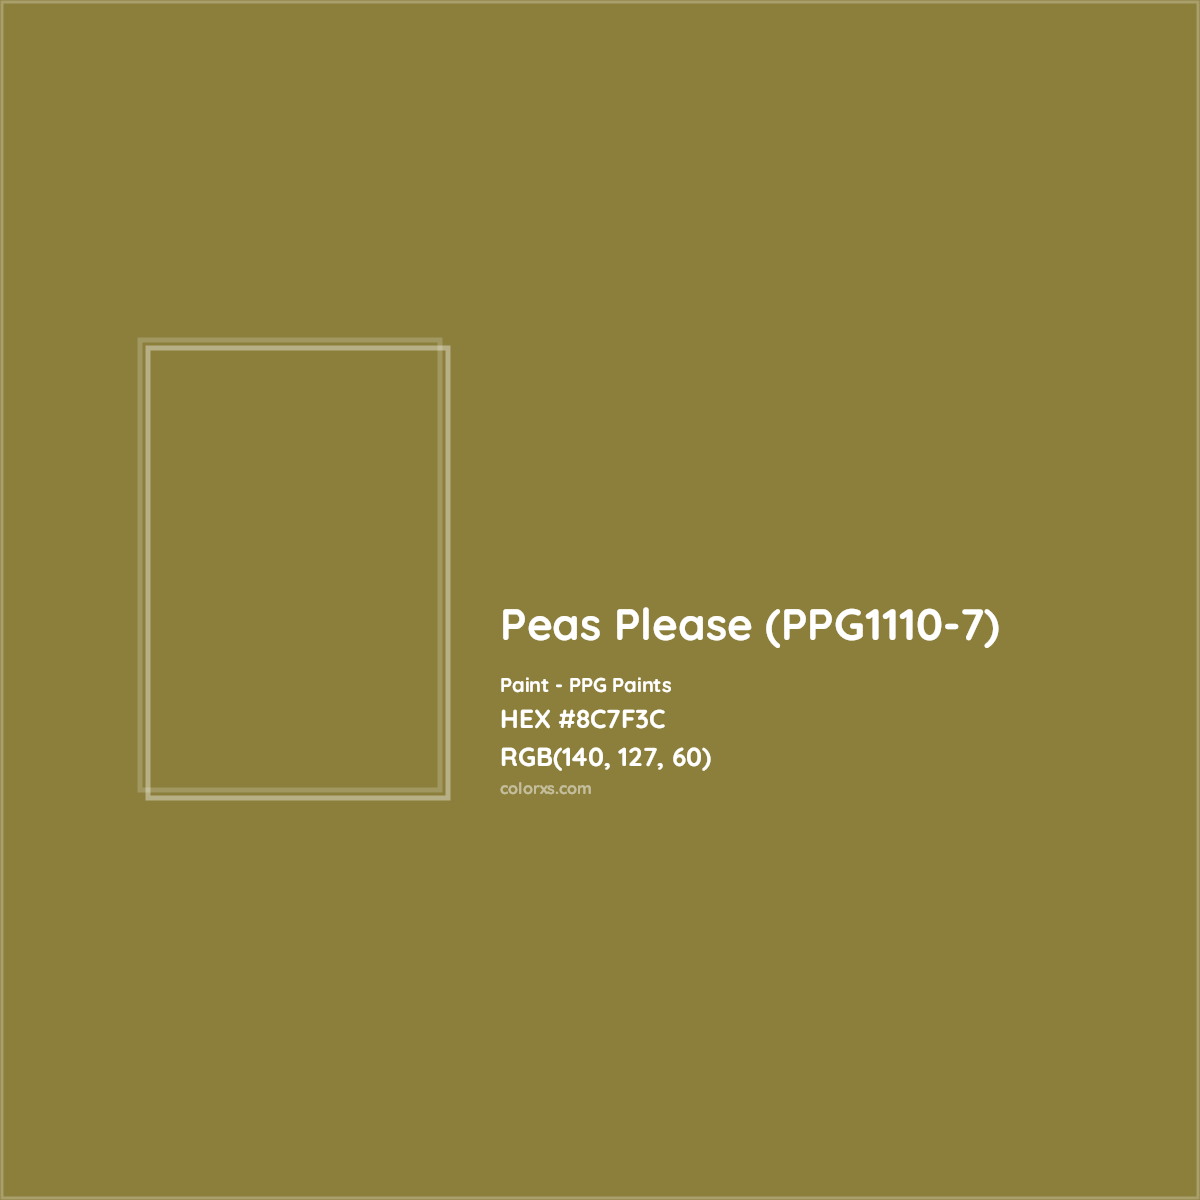 HEX #8C7F3C Peas Please (PPG1110-7) Paint PPG Paints - Color Code